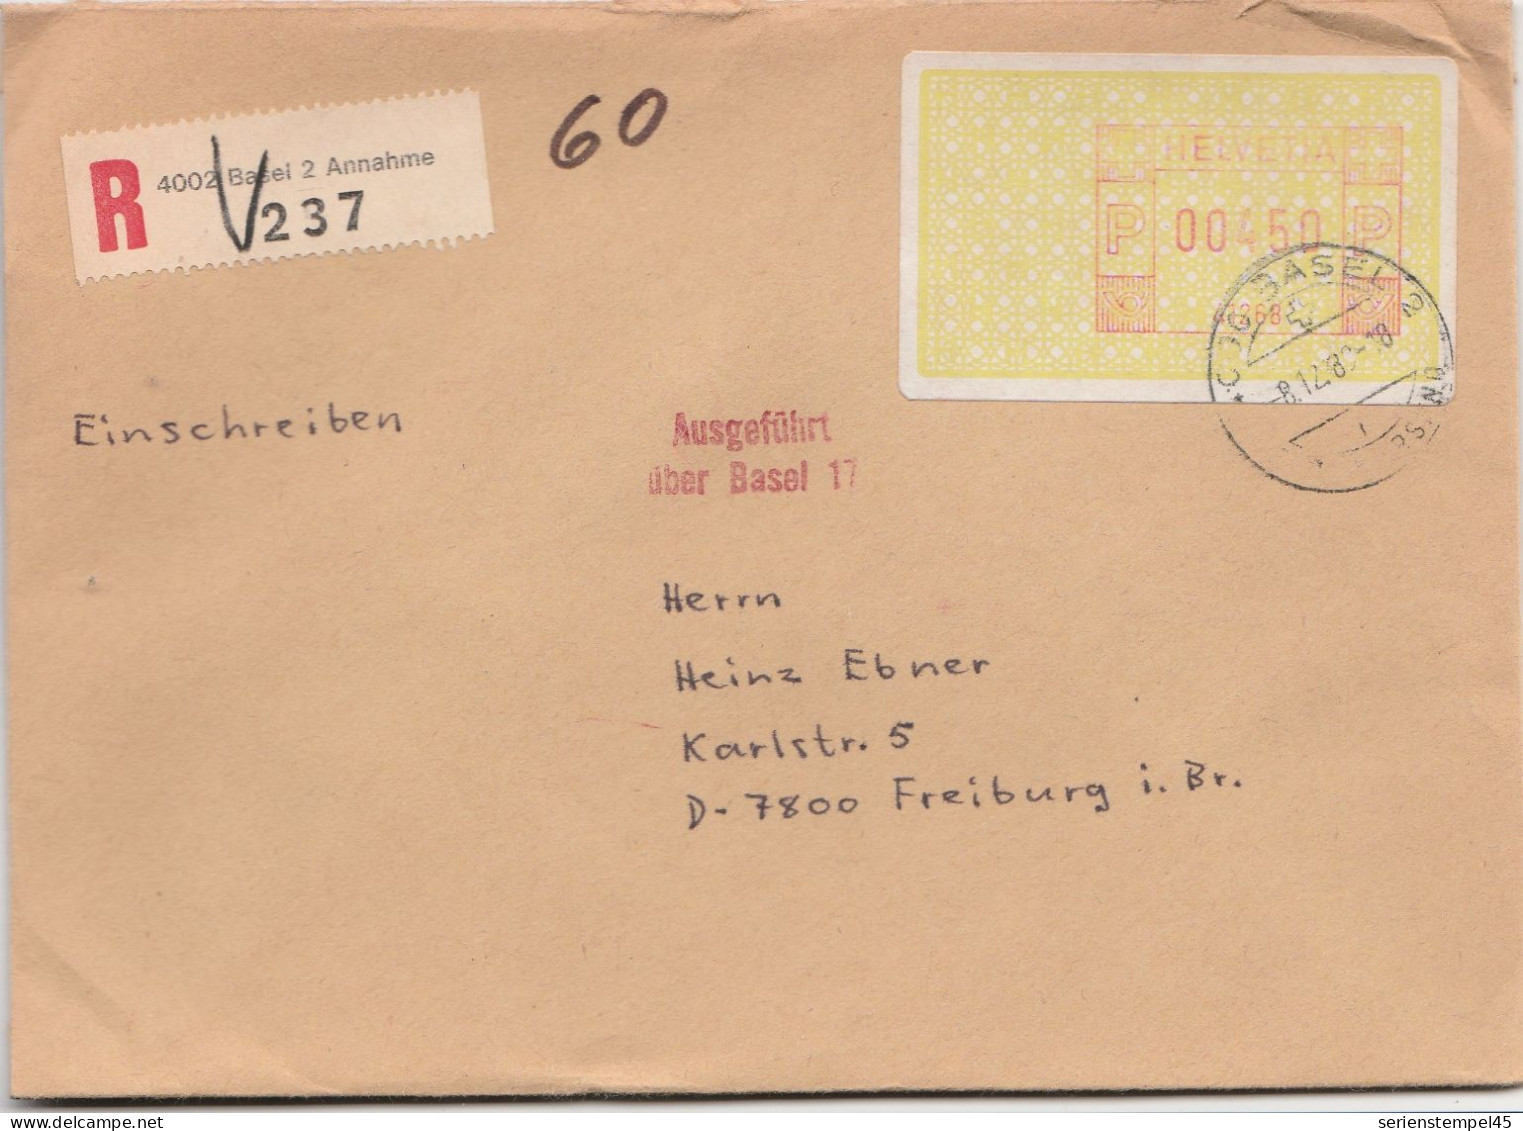 Schweiz Einschreiben Brief 4002 Basel 2 Annahme Mit Freistempel 41268 Porto 450 P 1989 - Postage Meters